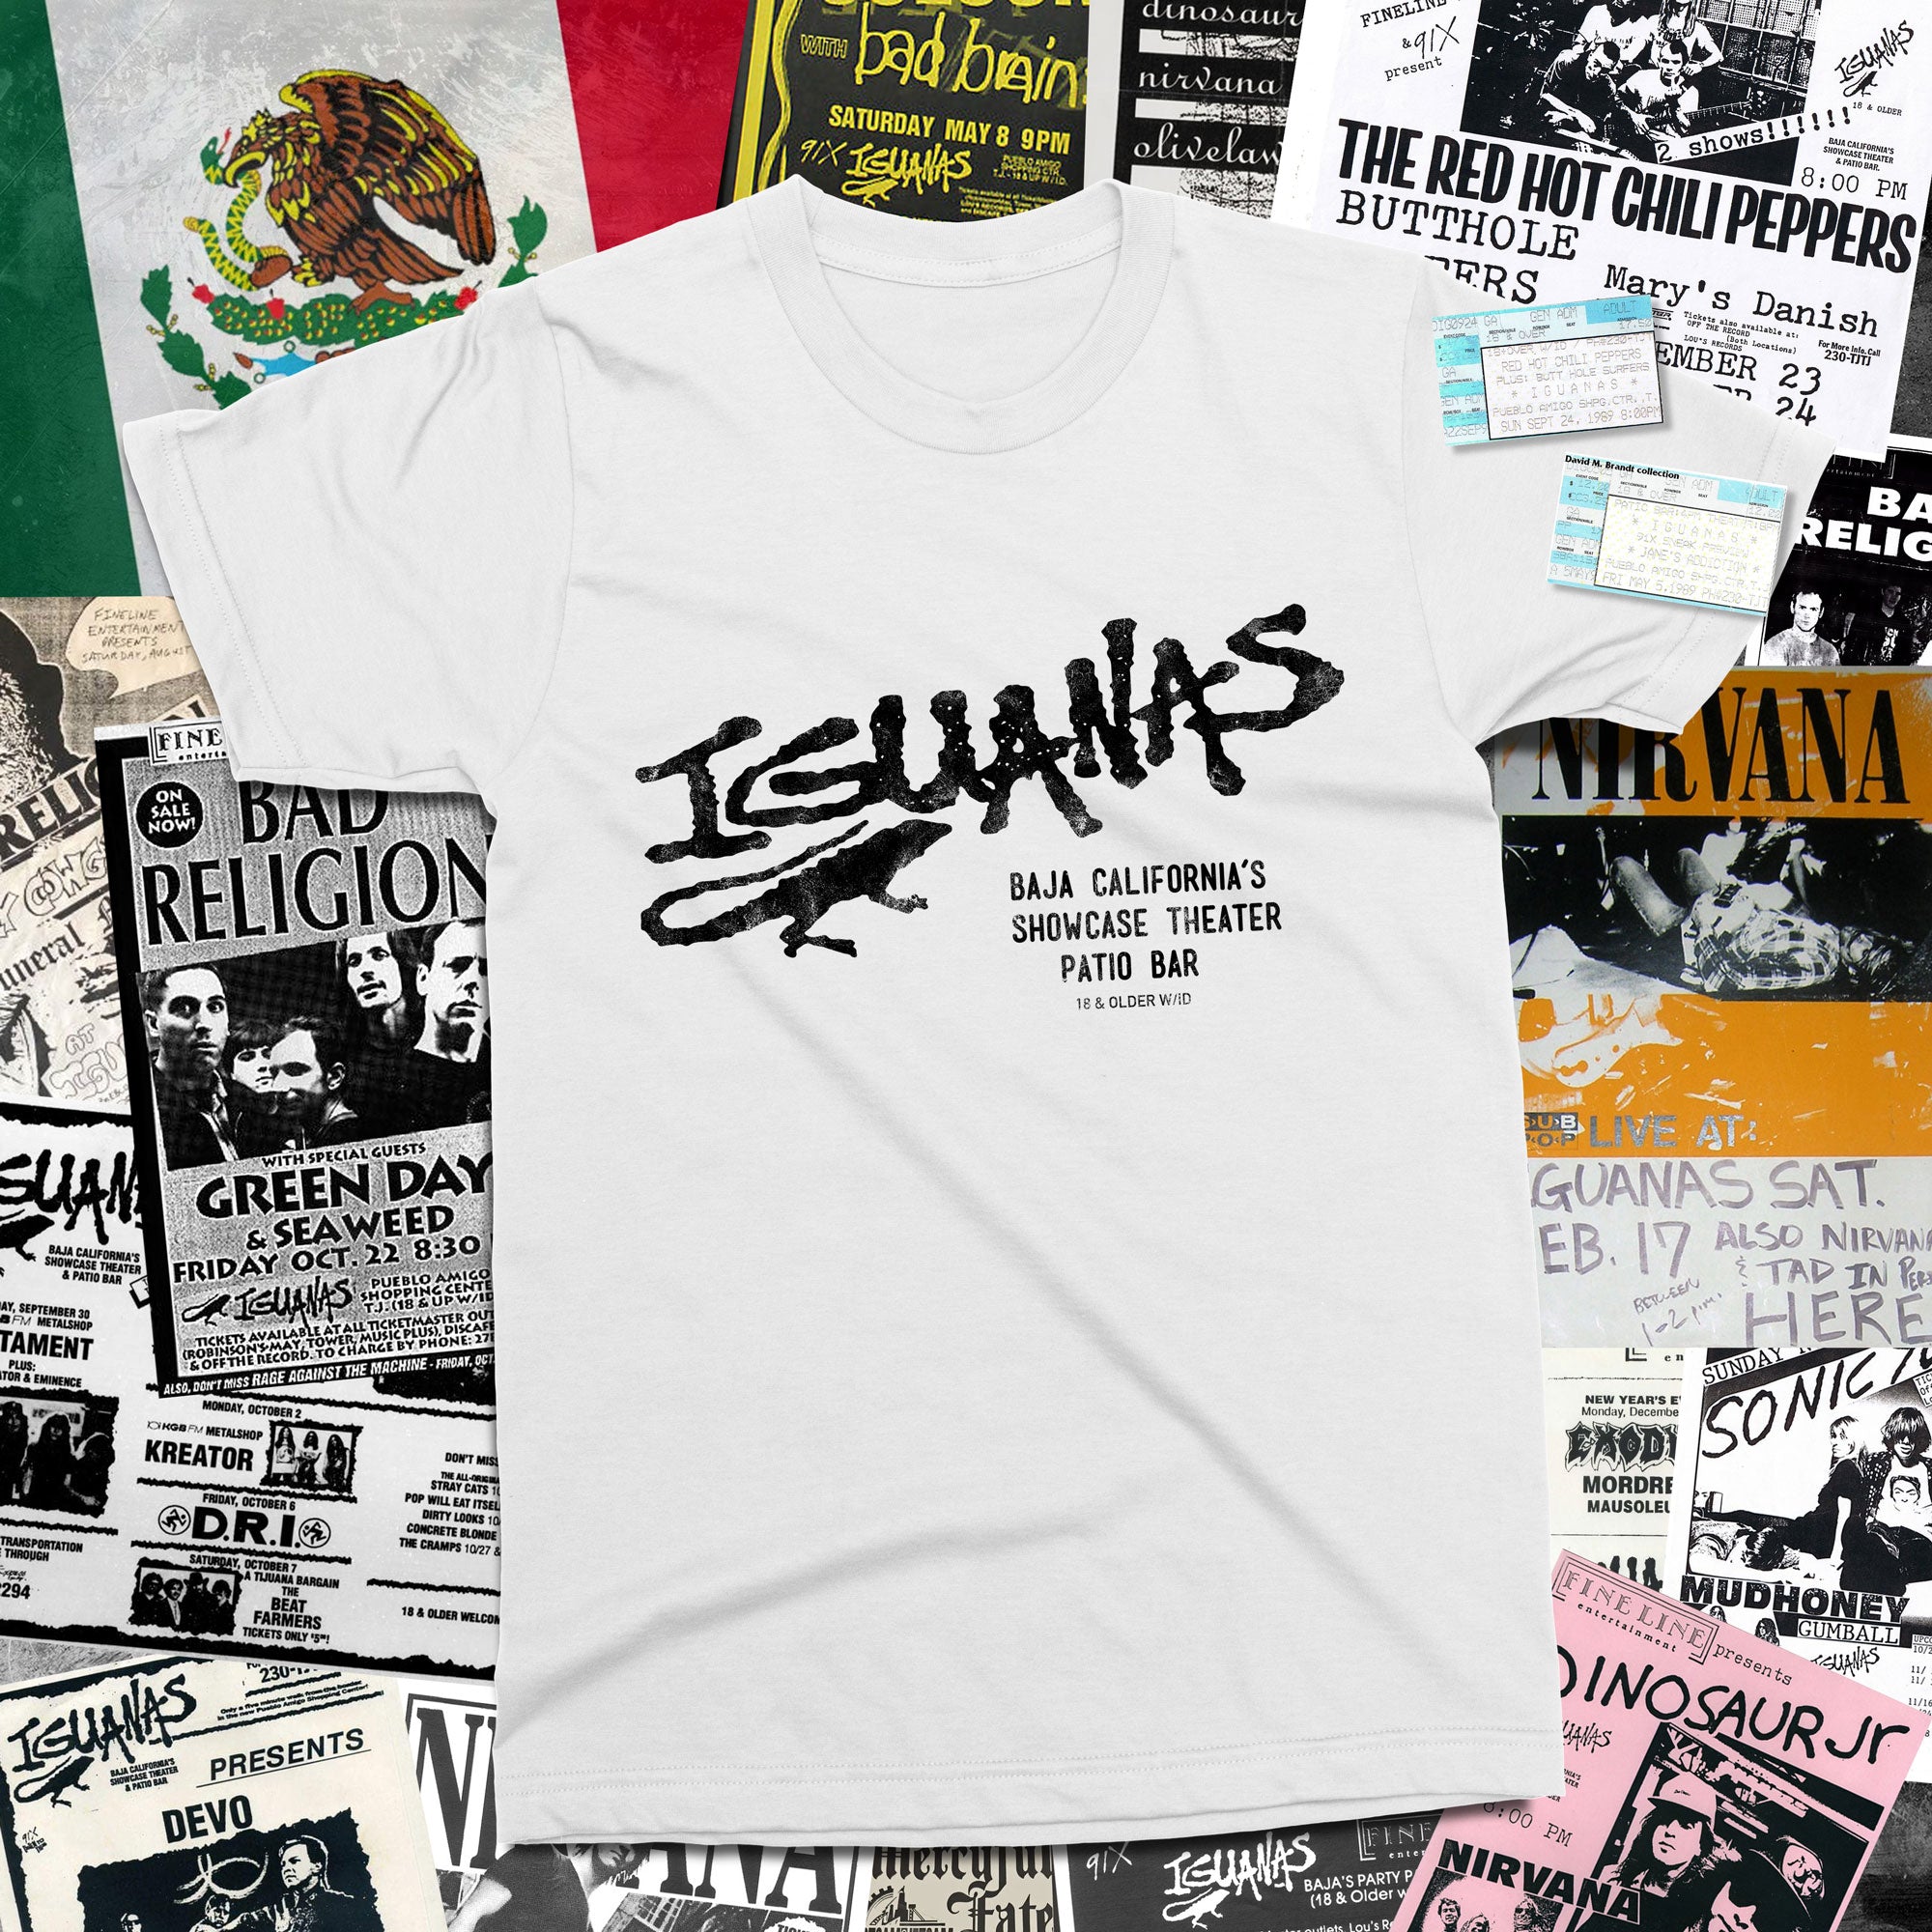 Iguana's T-shirt, Tijuana Mexico